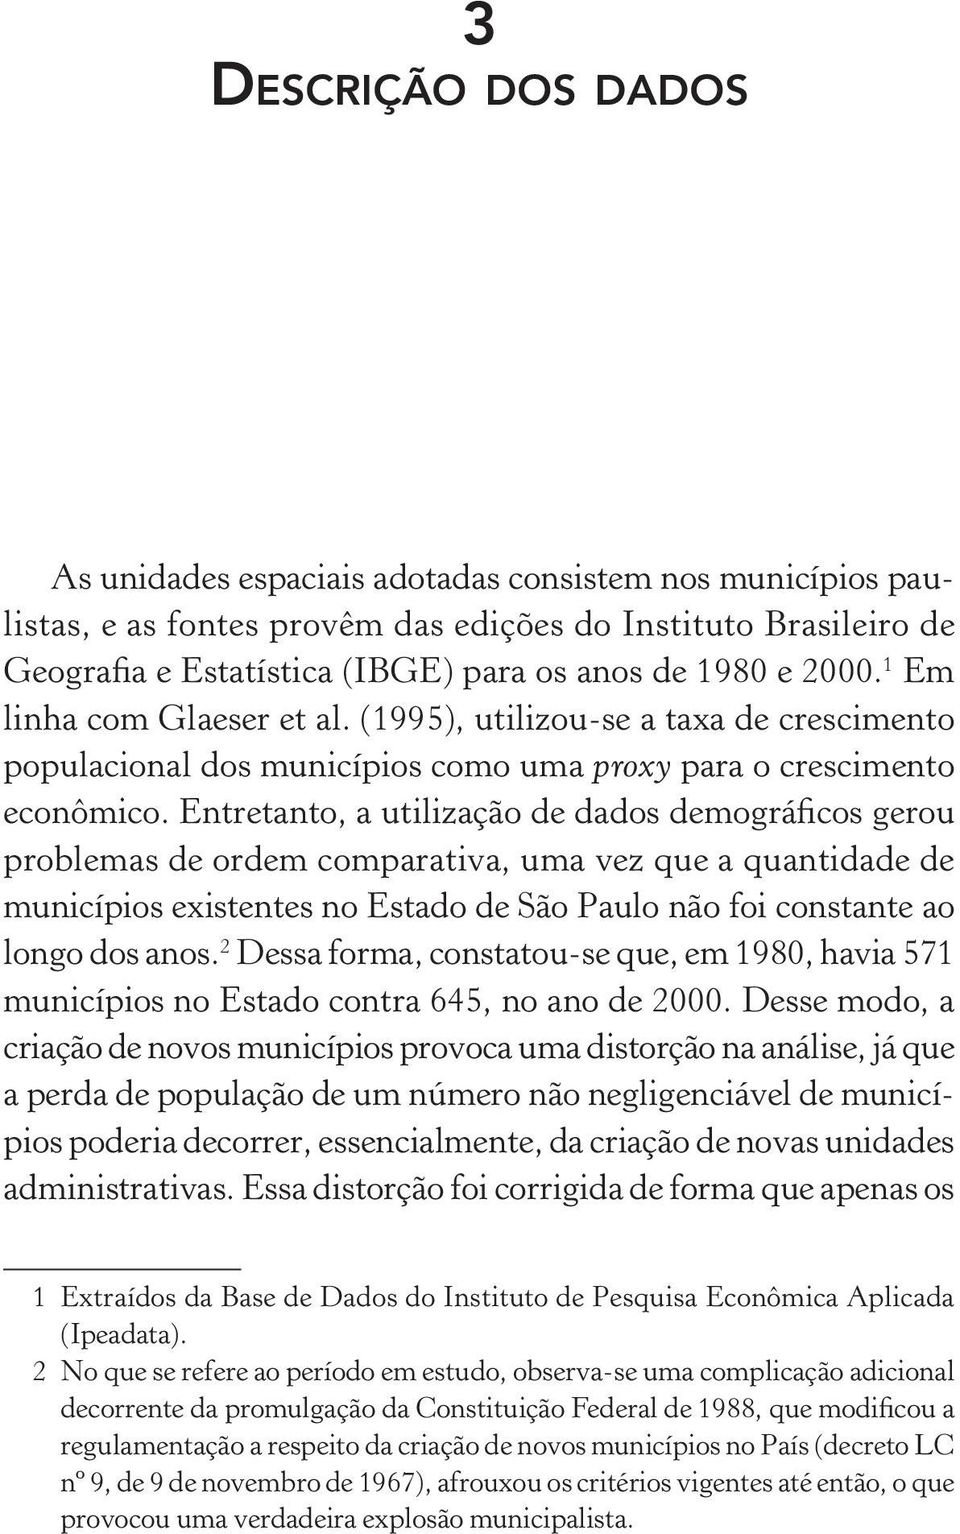 Entretanto, a utilização de dados demográficos gerou problemas de ordem comparativa, uma vez que a quantidade de municípios existentes no Estado de São Paulo não foi constante ao longo dos anos.